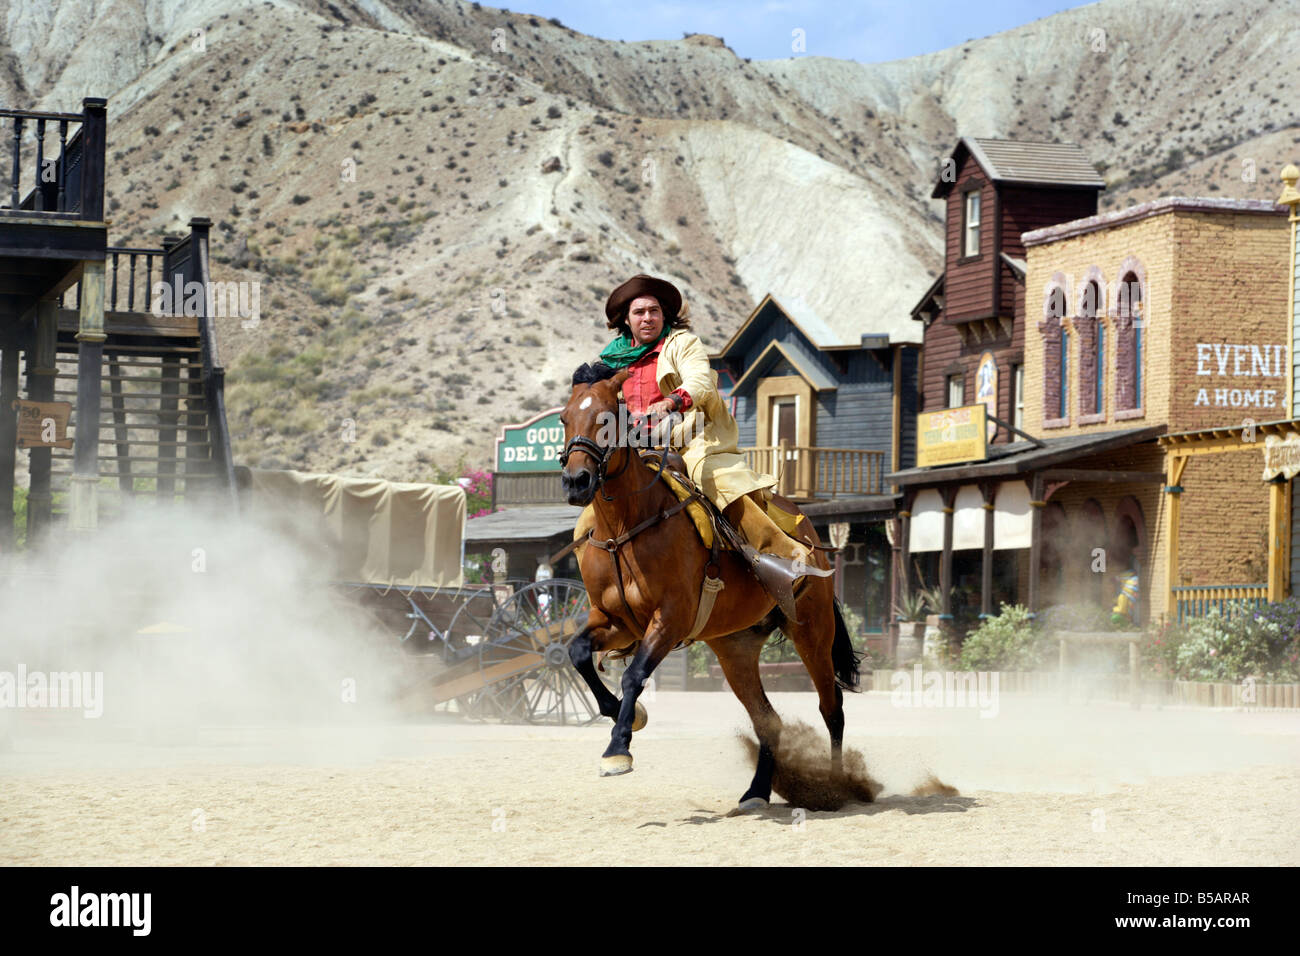 Cowboy Shootout bei Spaghetti-Western Film set, Oasys, Mini-Hollywood, Tabernas, Almeria, Spanien Stockfoto